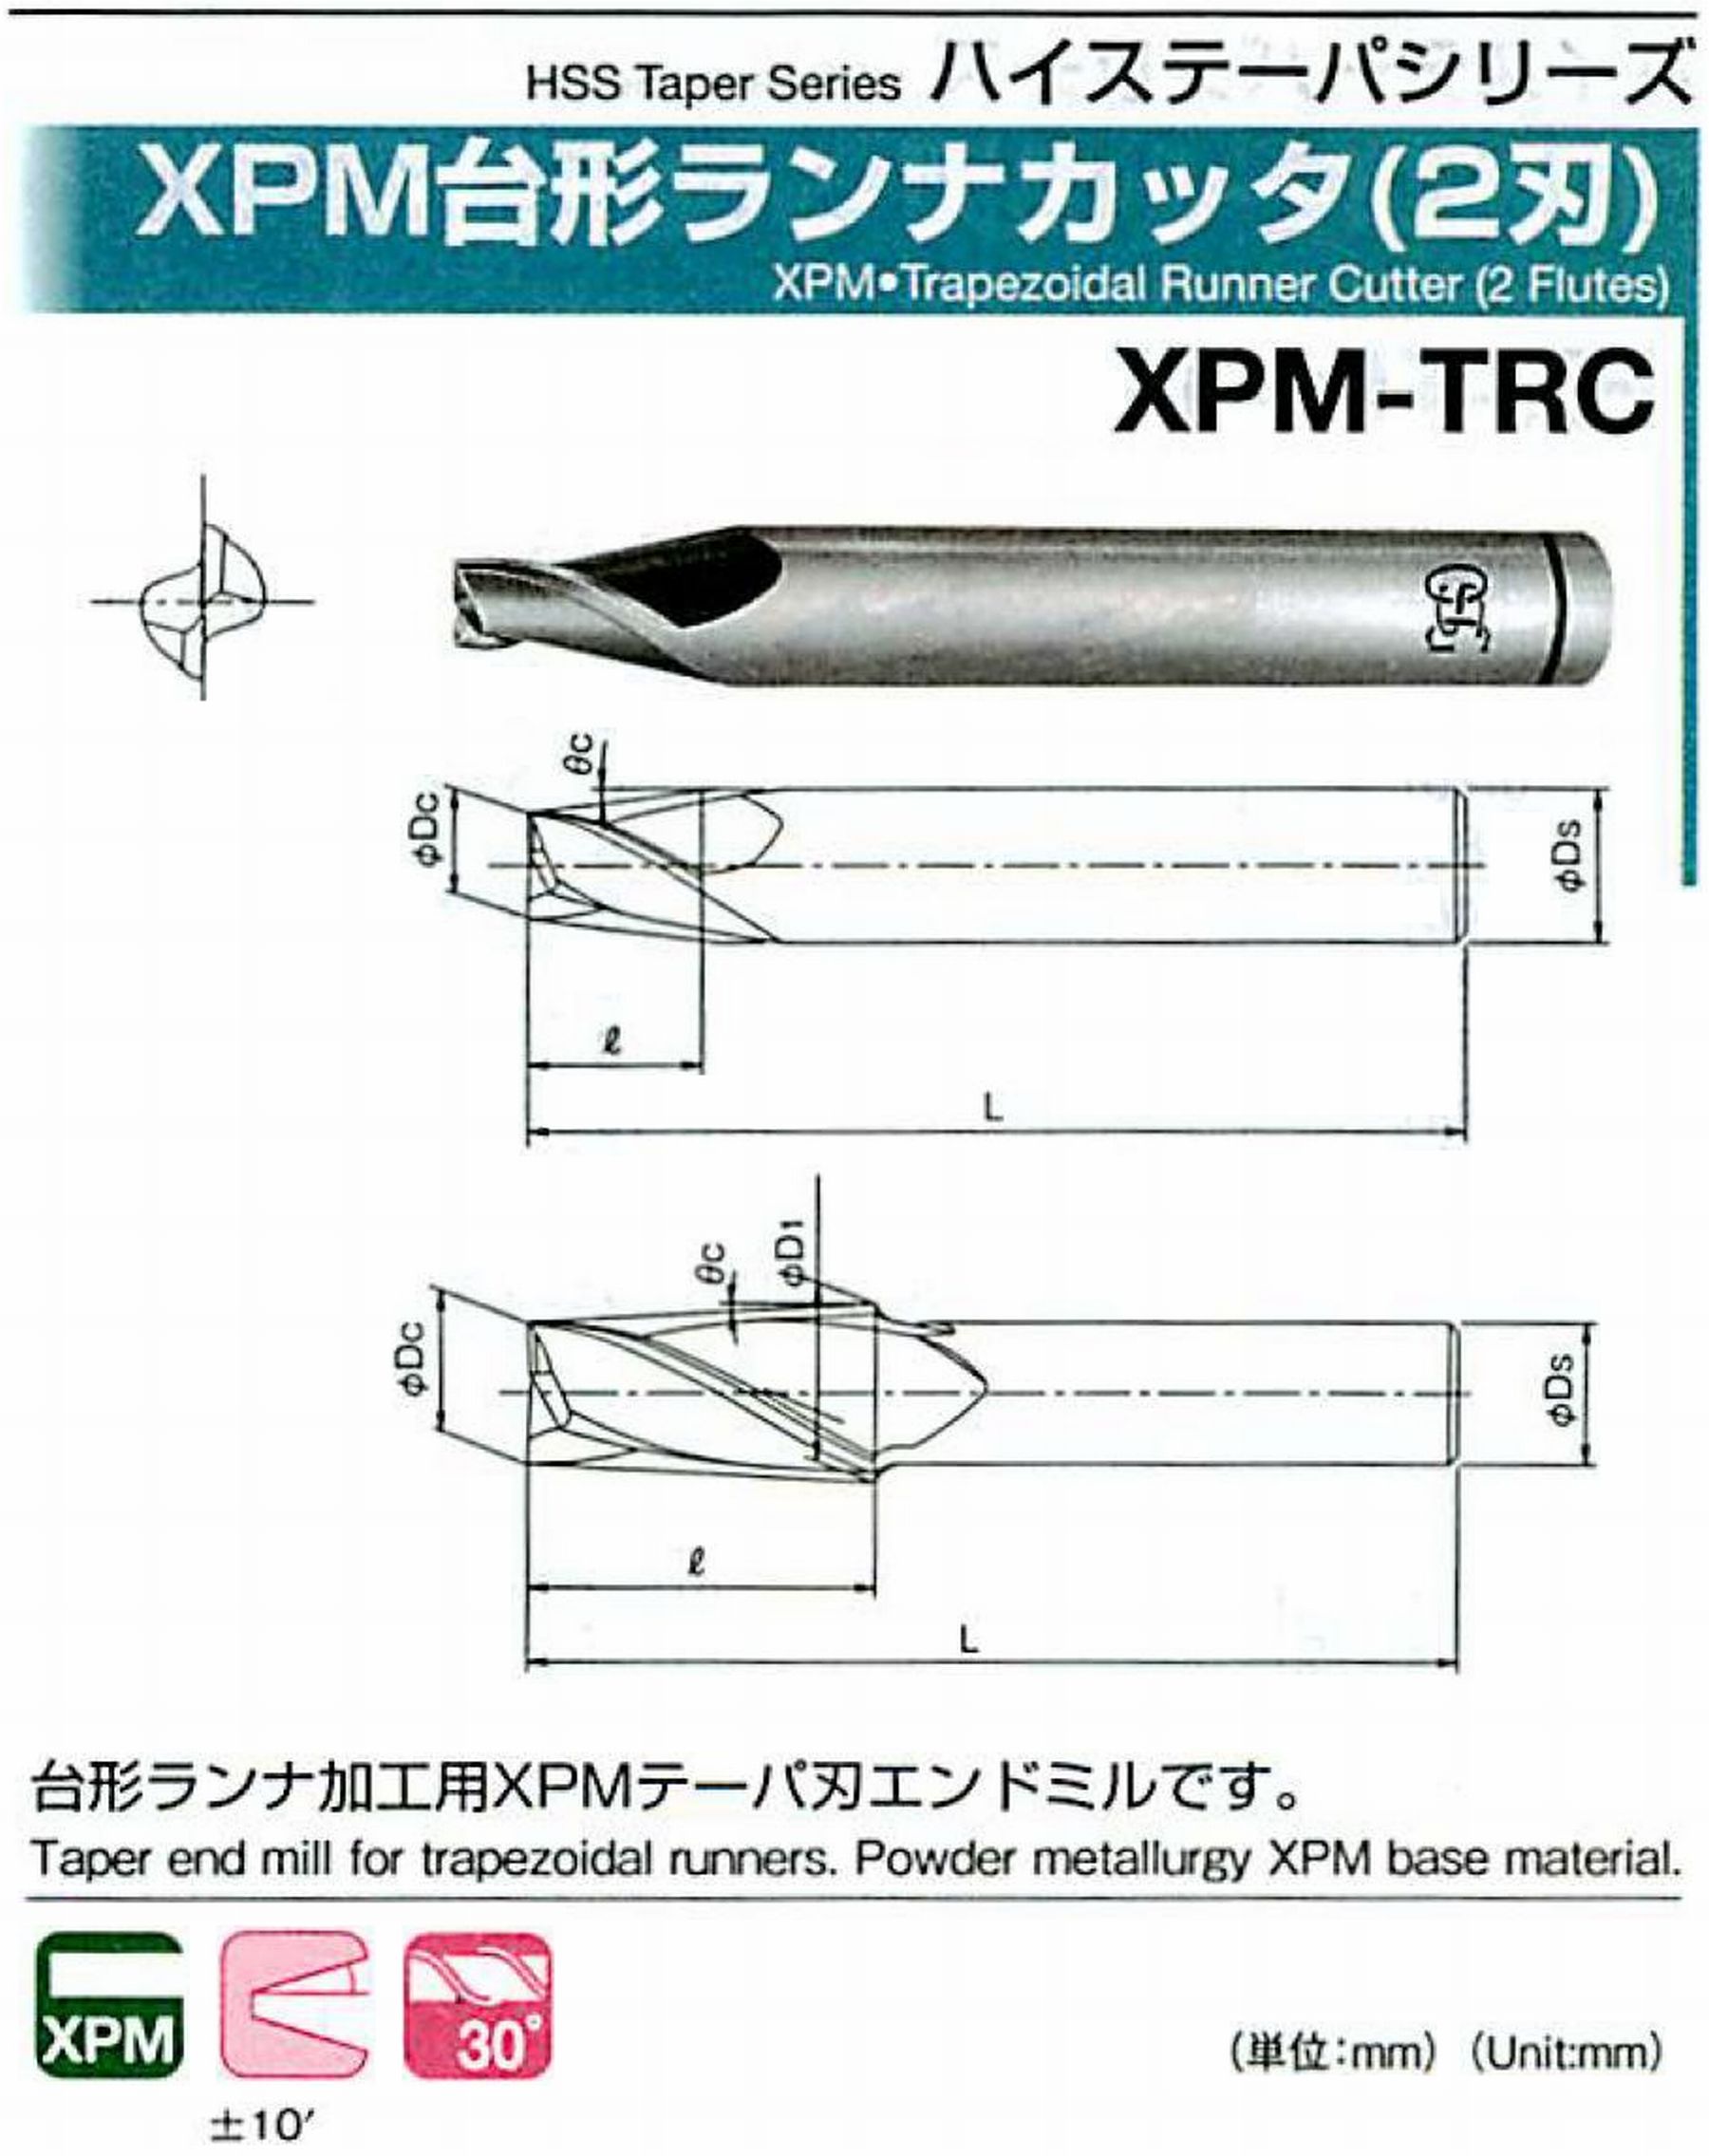 オーエスジー/OSG XPM台形ランナカッタ(2刃) XPM-TRC 外径×刃部テーパ半角2.5×12° 全長50 刃長5 シャンク径6mm